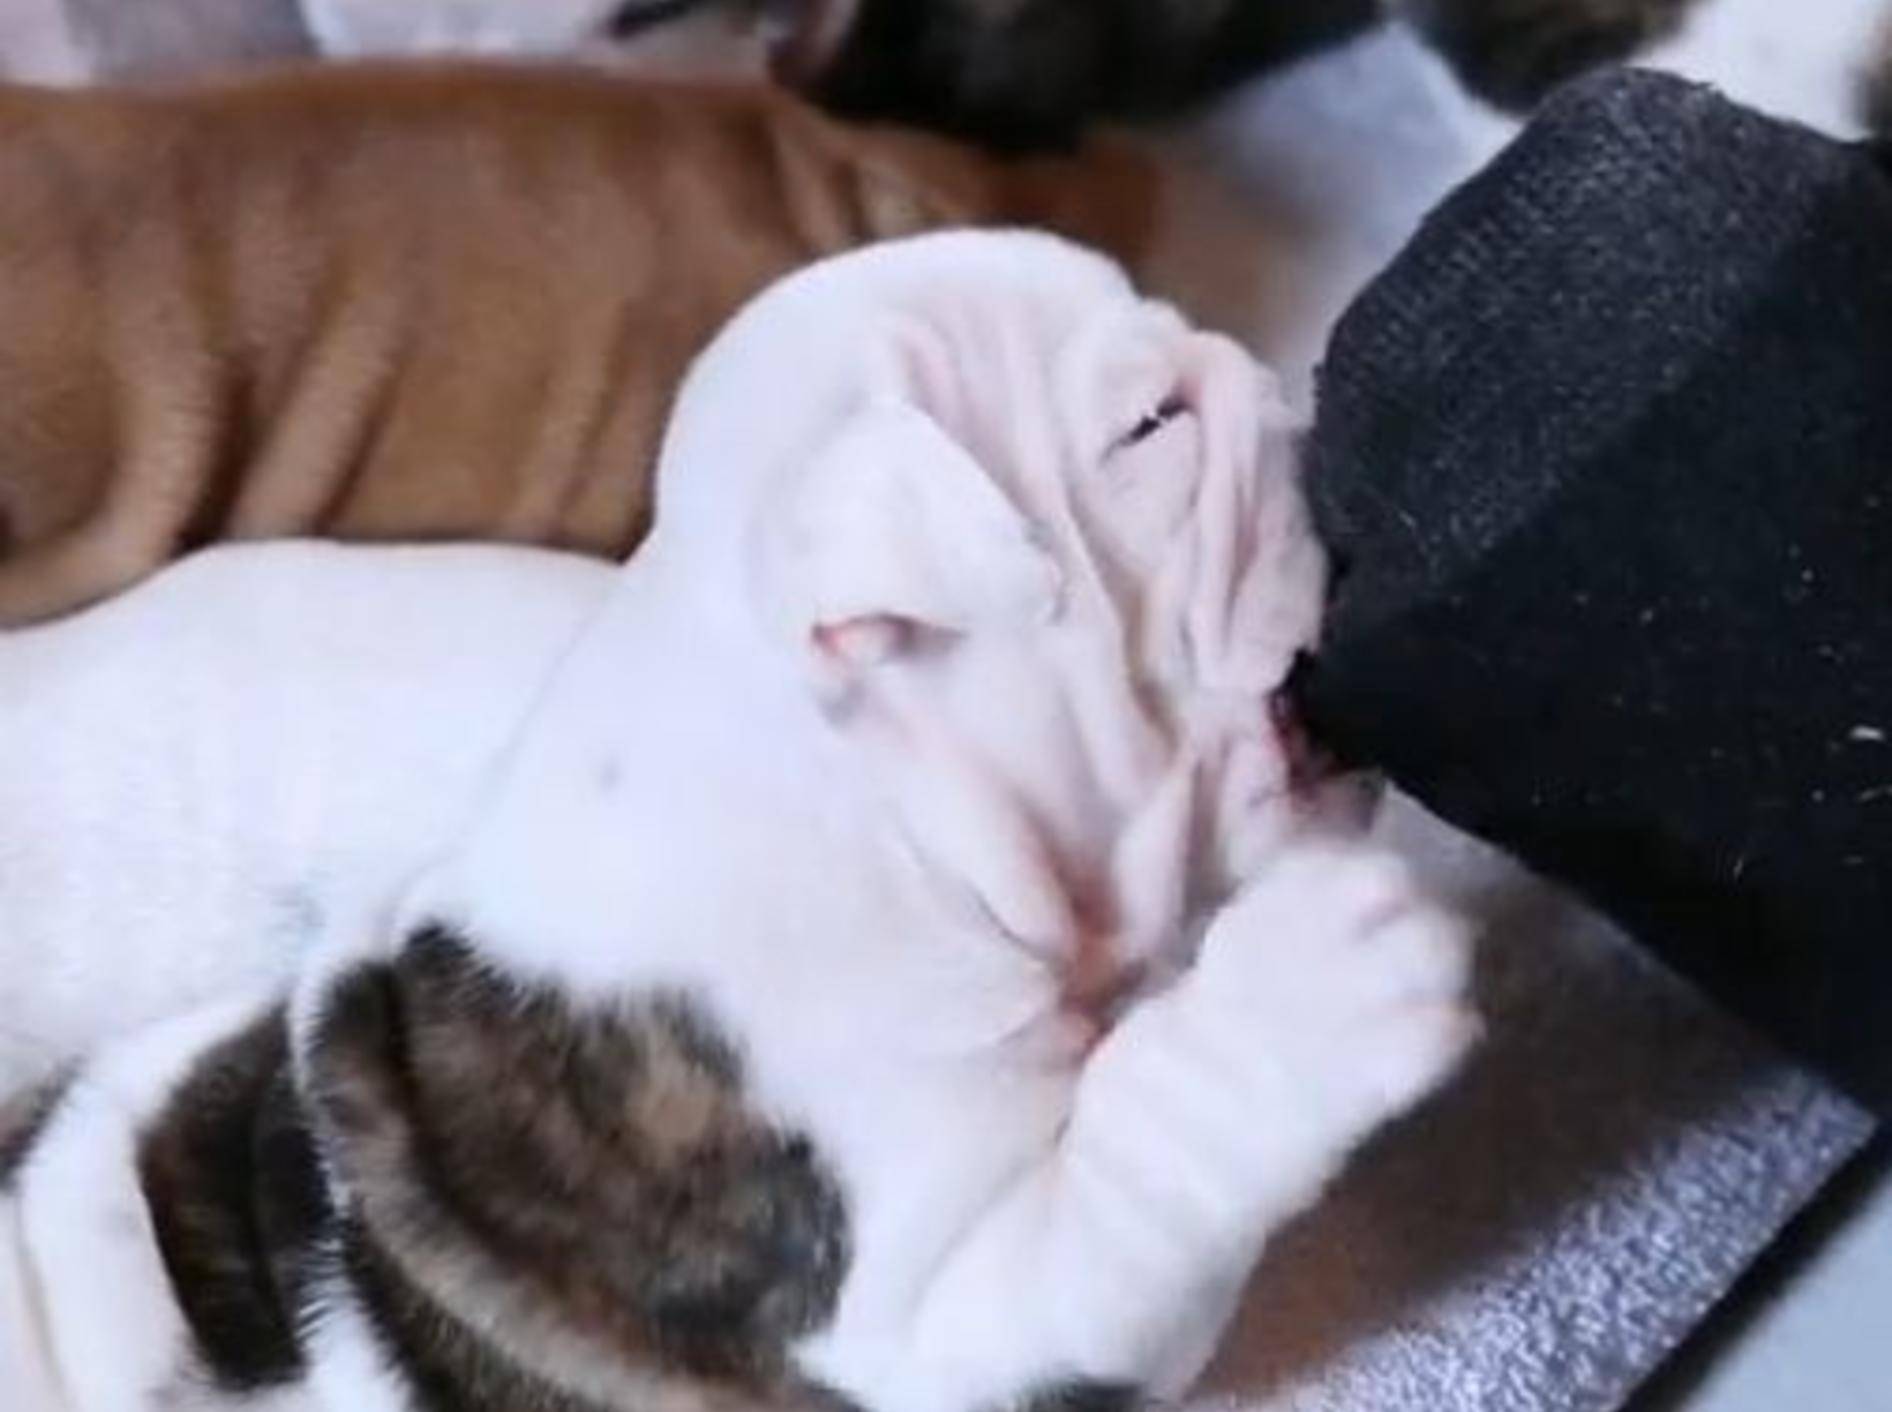 Englische Bulldogge knabbert am Zeh ihrer Besitzerin – Bild: YouTube / The Pet Collective